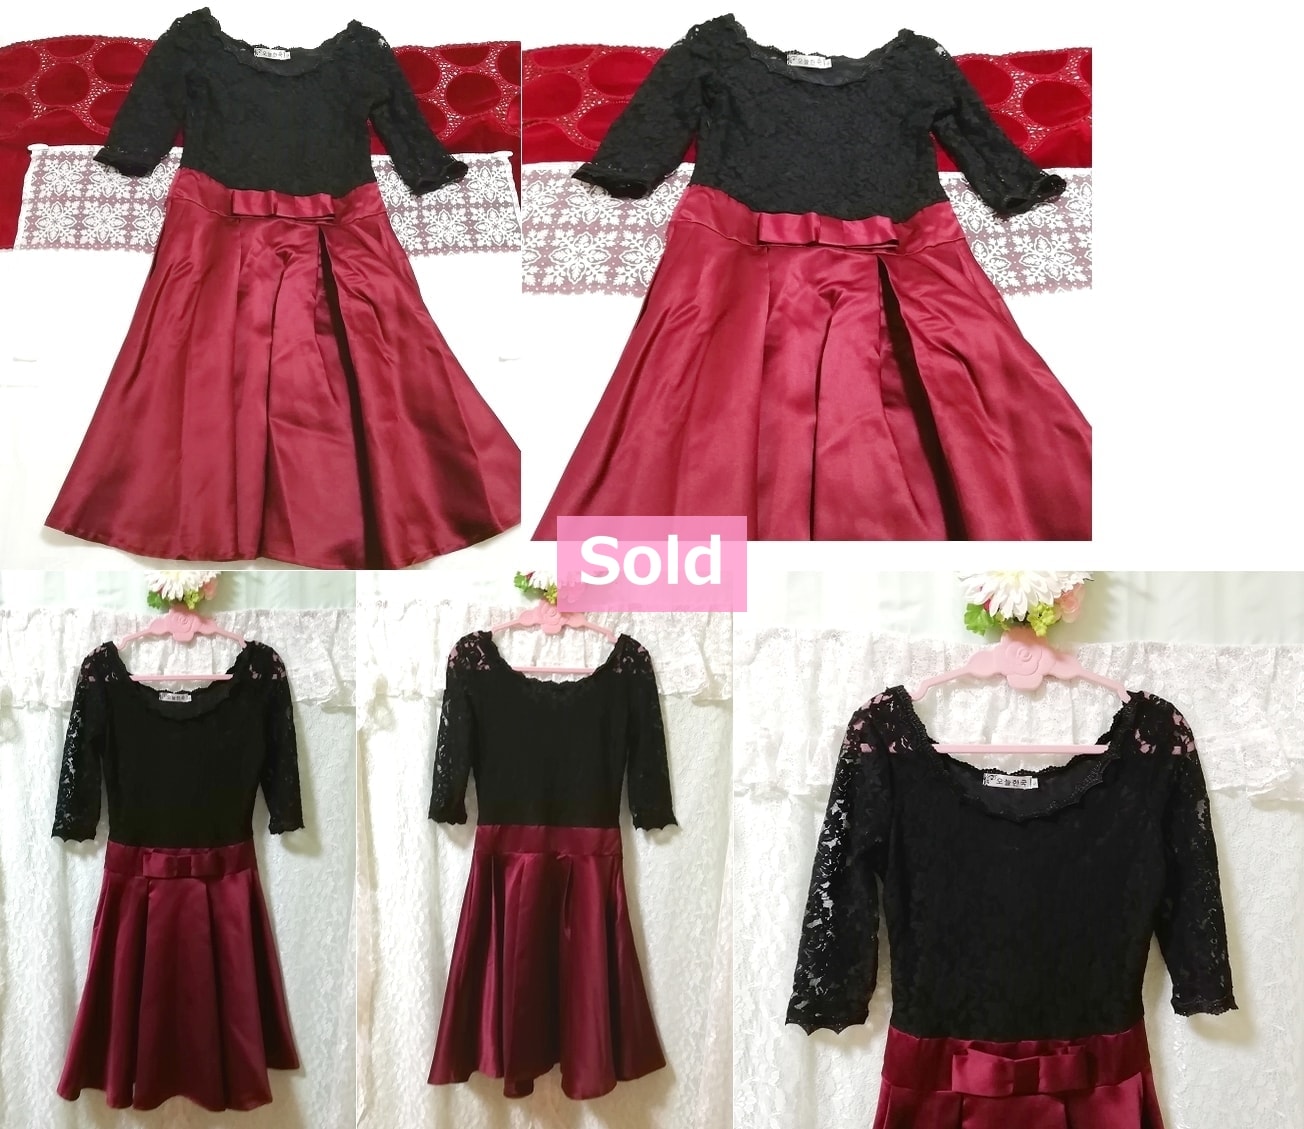 Koreanisches Kleid einteilige schwarze Spitzenoberteile roter lila Satinrock, Kleid & knielanger Rock & M-Größe